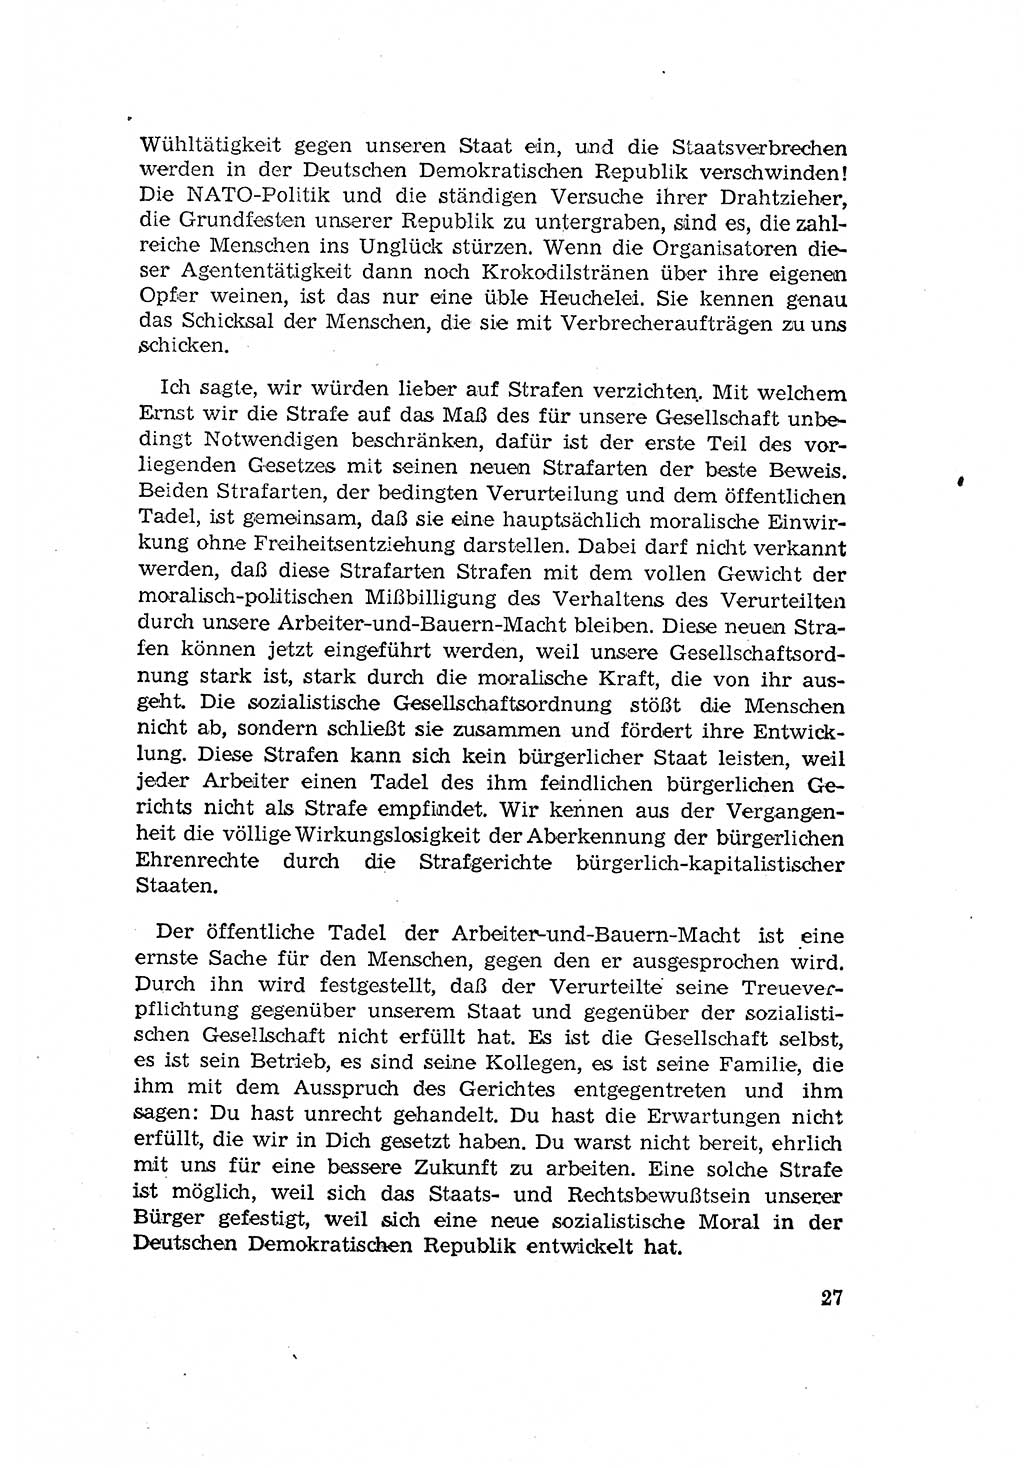 Zum Erlaß des Gesetzes zur Ergänzung des Strafgesetzbuches (StGB), Strafergänzungsgesetz (StEG) [Deutsche Demokratische Republik (DDR)] 1957, Seite 27 (StGB StEG DDR 1957, S. 27)